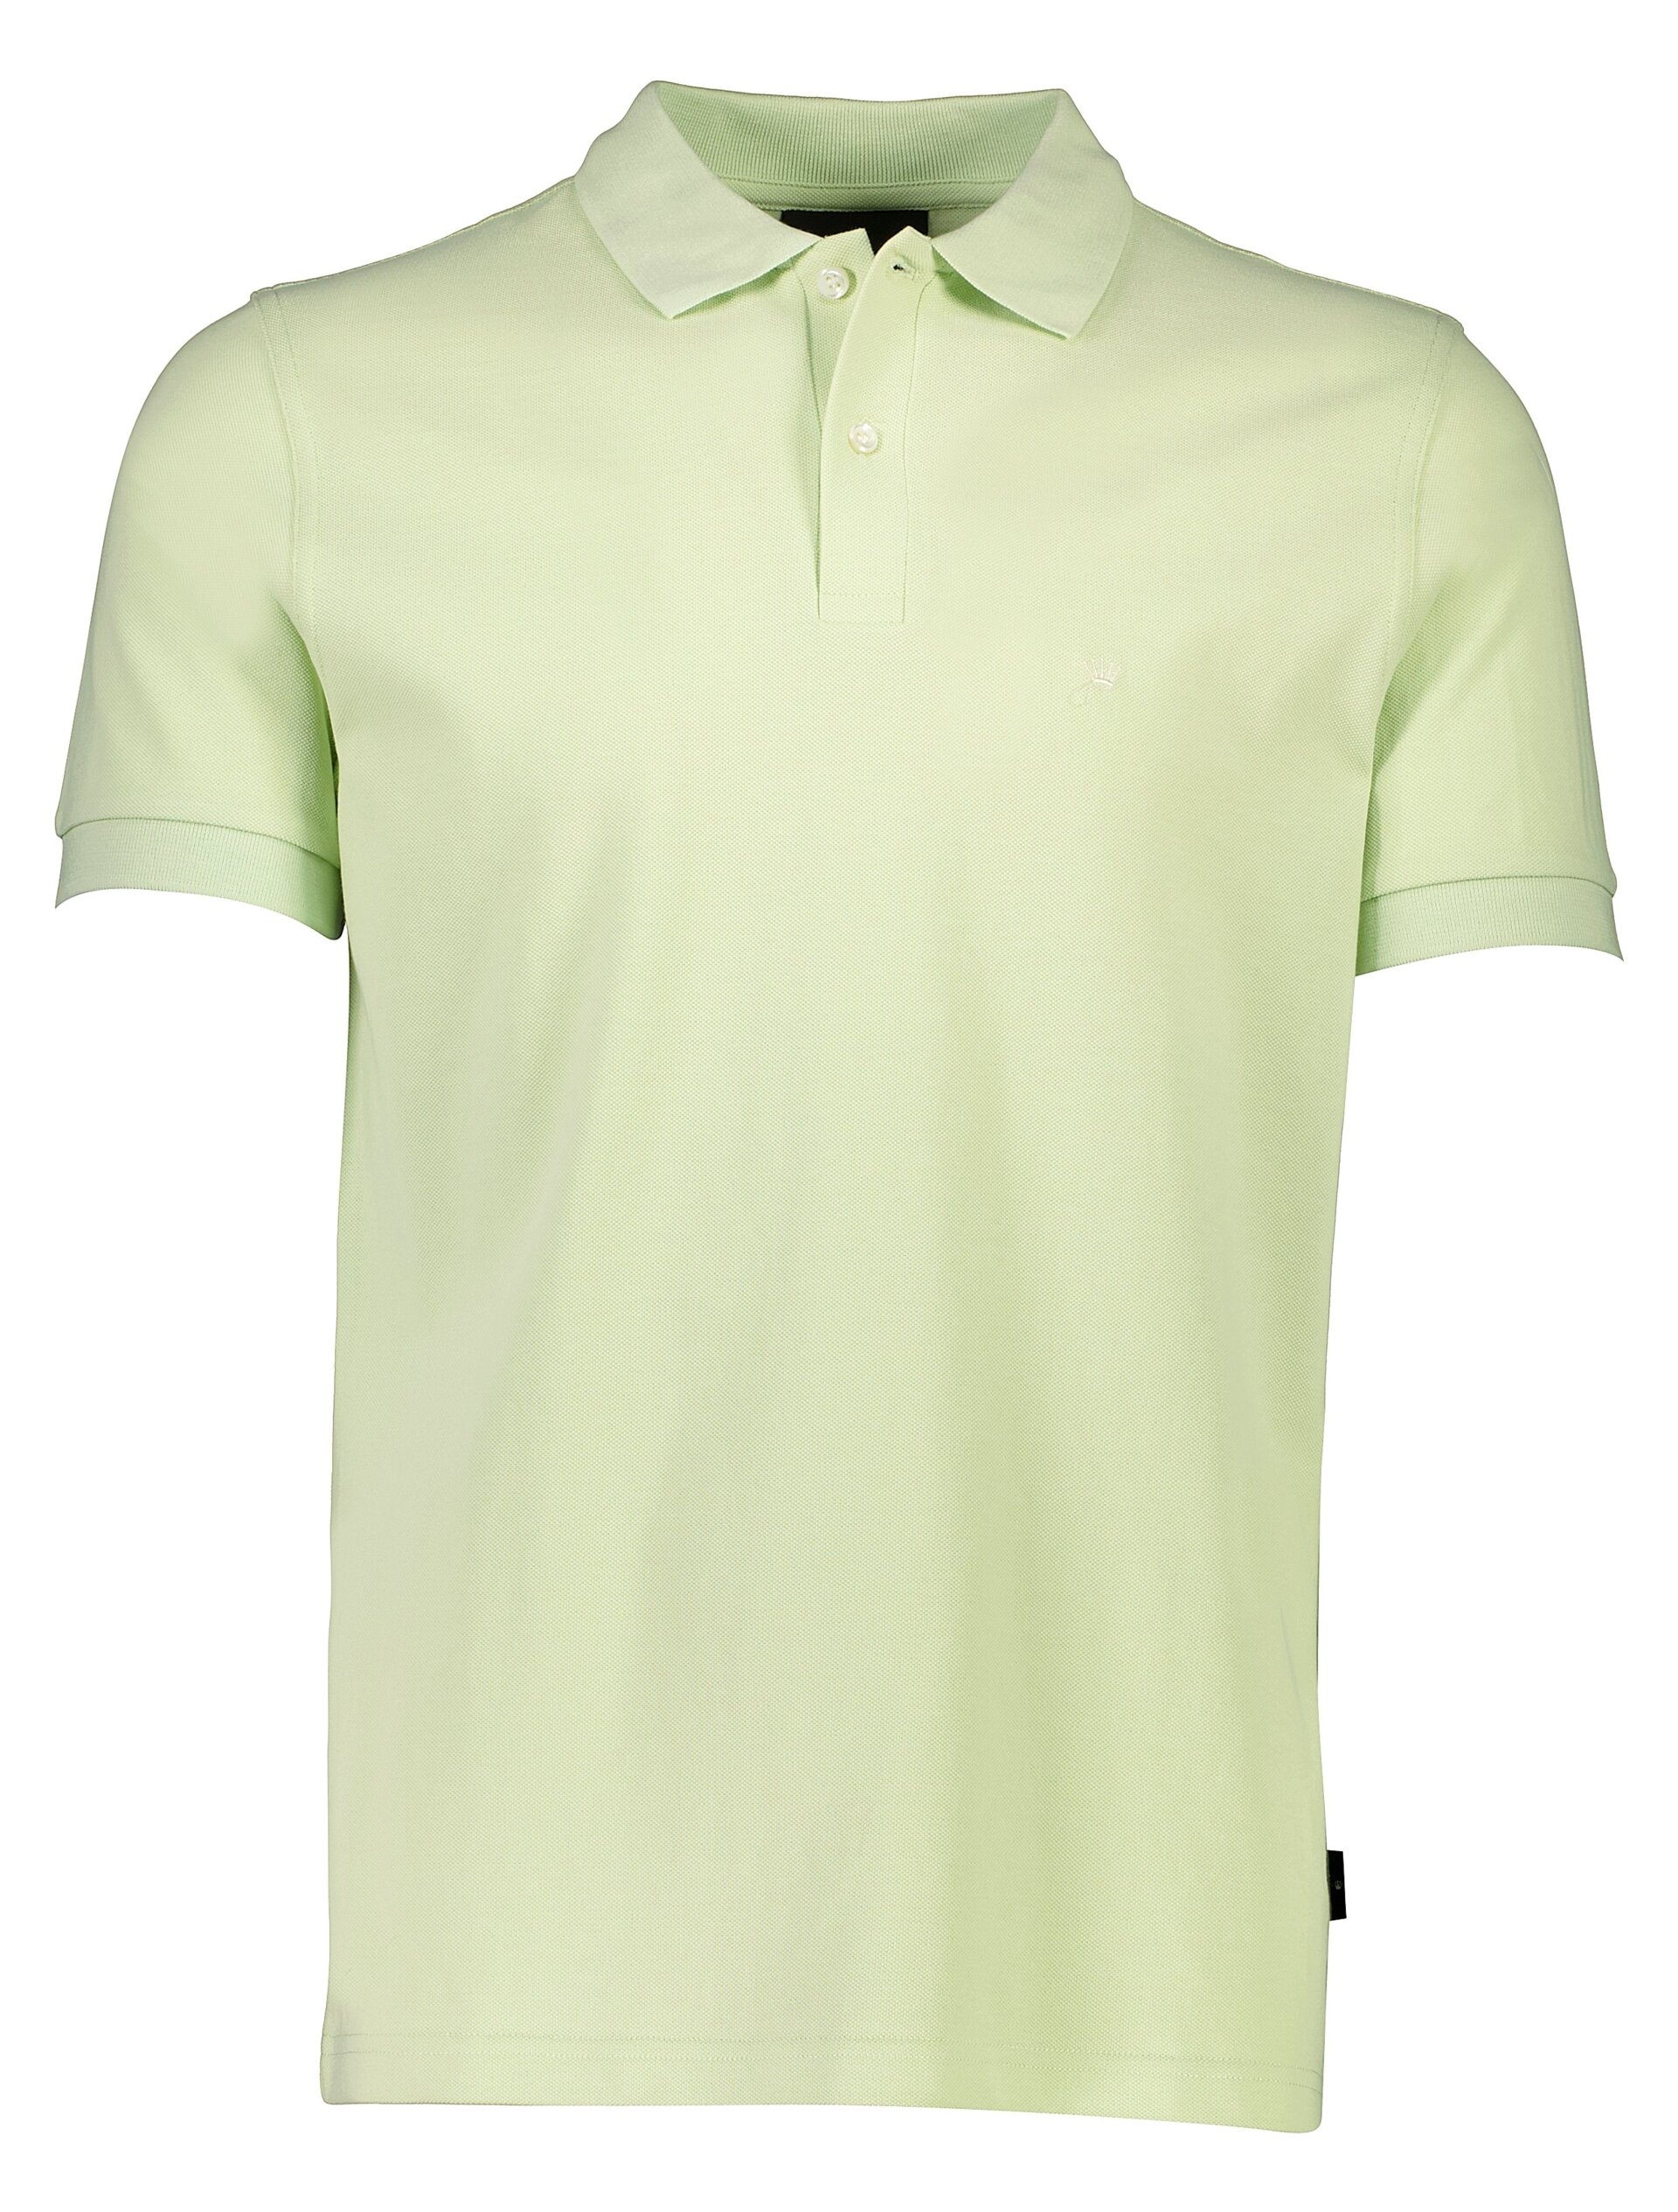 Junk de Luxe Polo shirt green / mint green